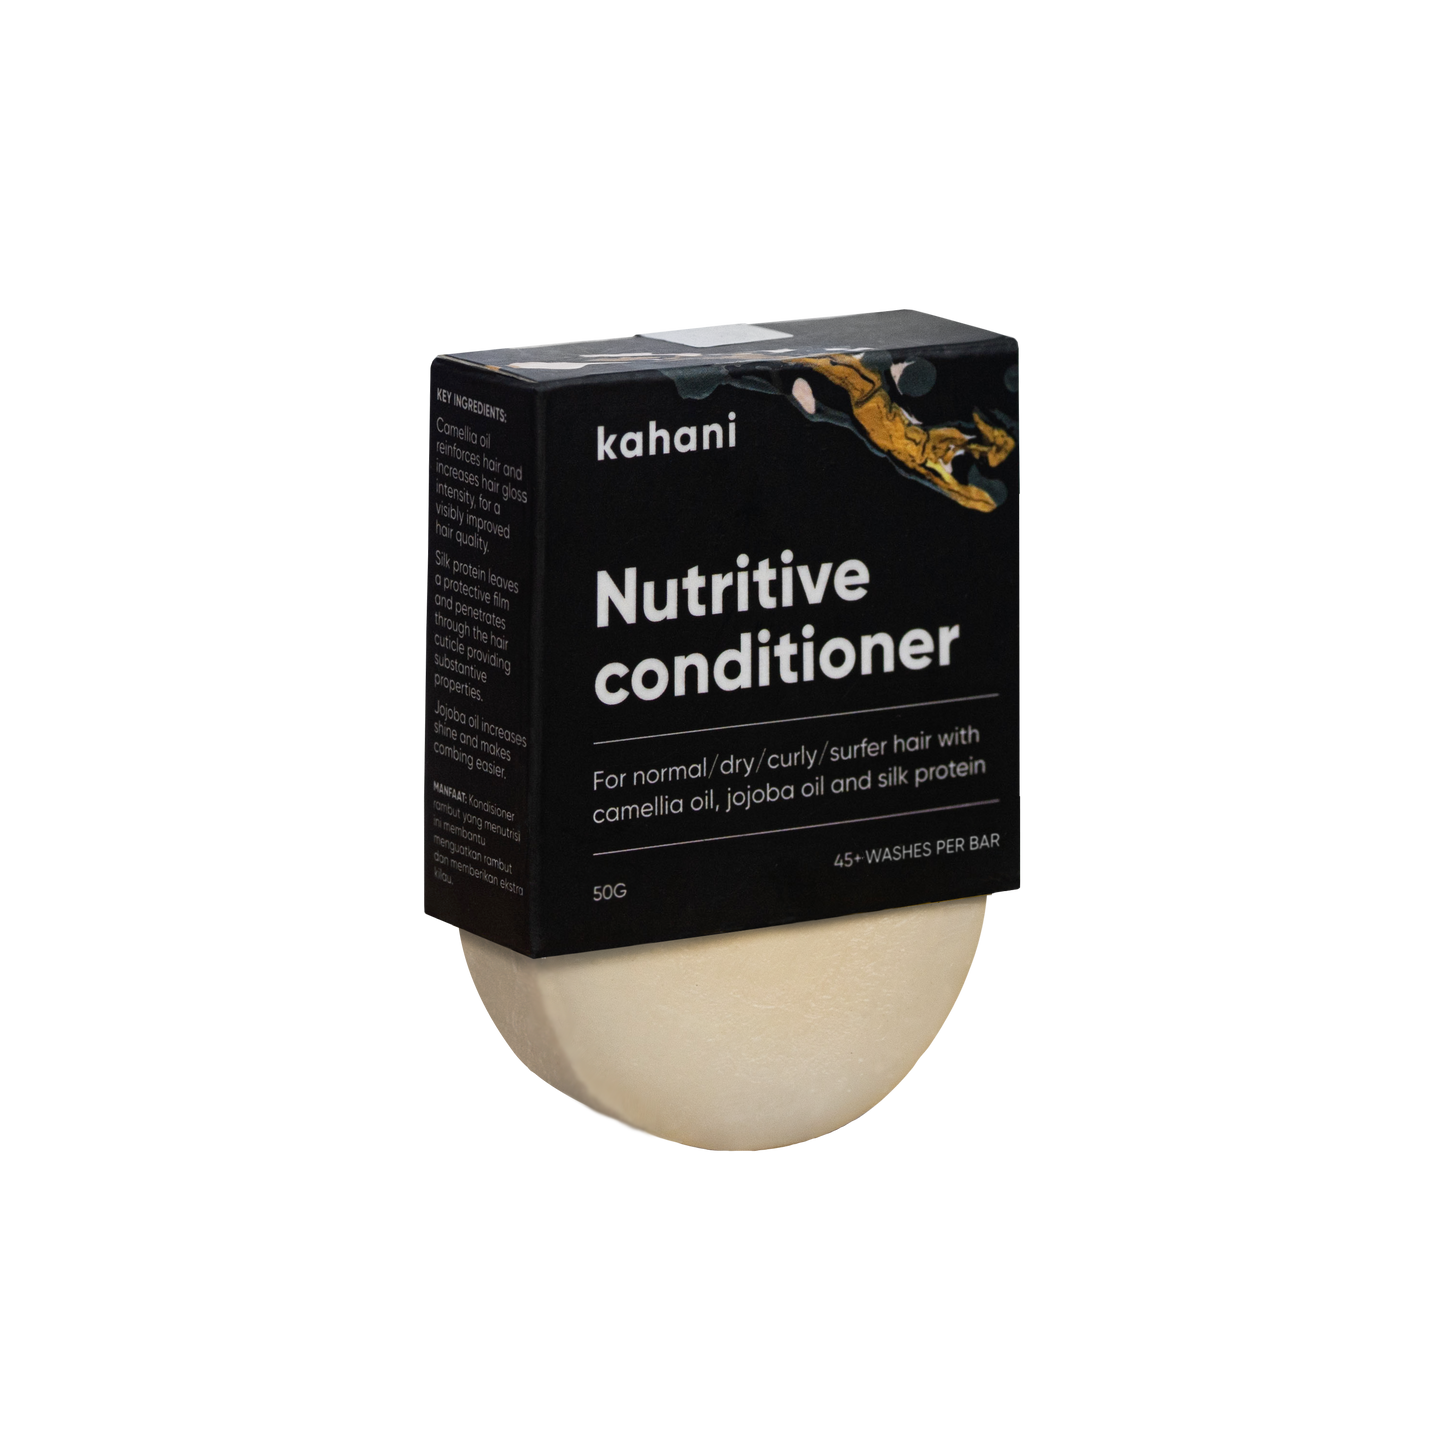 Nutritive conditioner bar